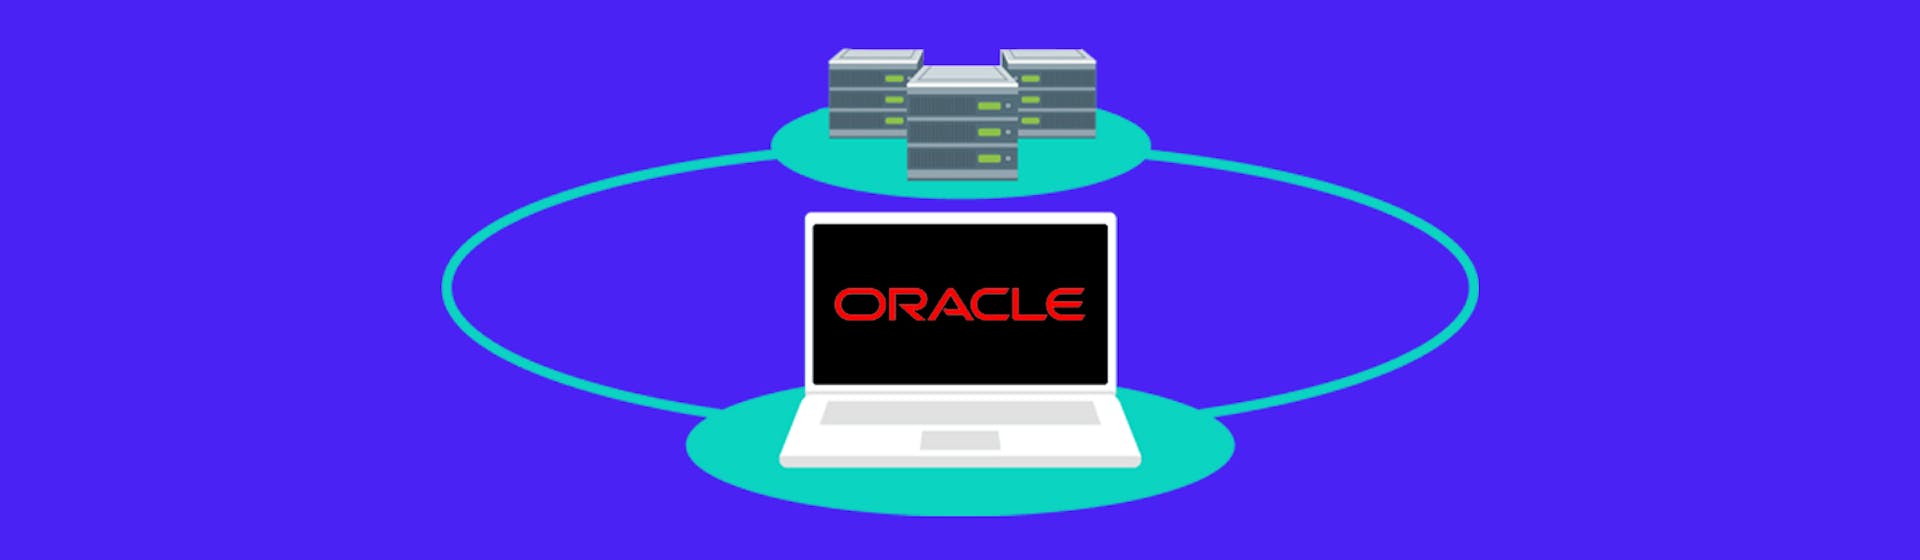 ¿Qué es Oracle? Apréndelo y las empresas te buscarán para gestionar sus bases de datos